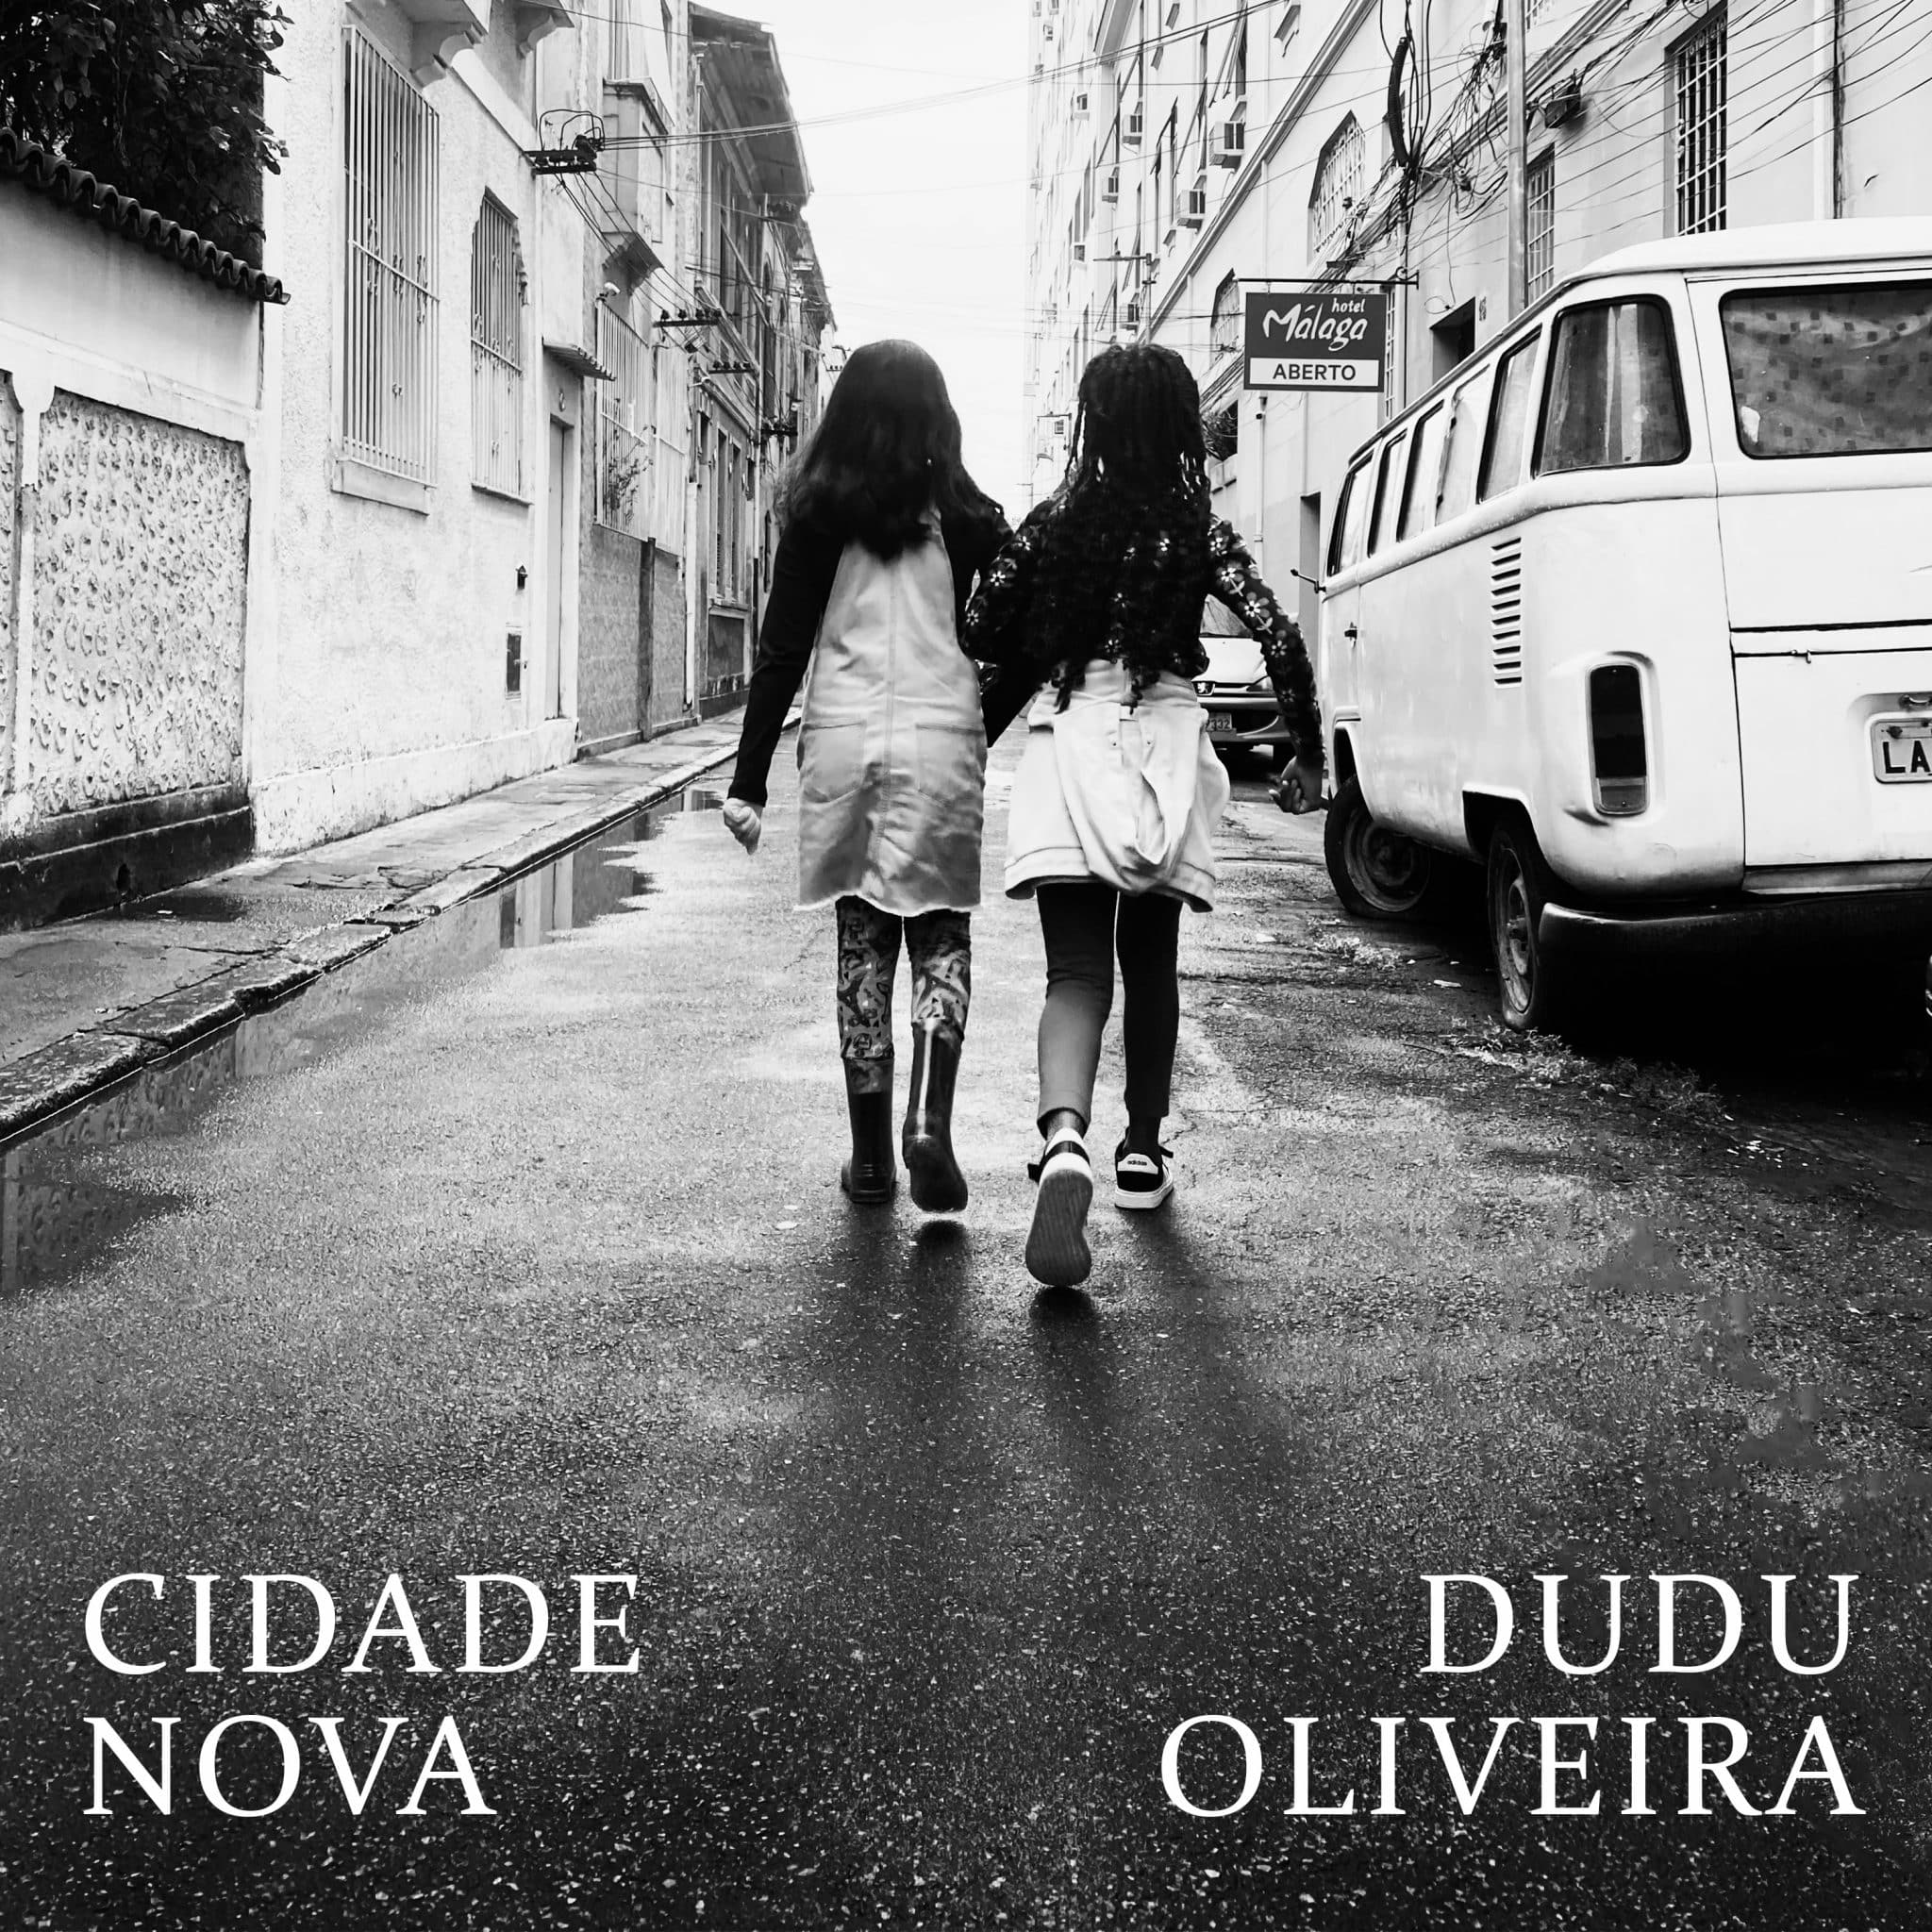 revistaprosaversoearte.com - Dudu Oliveira lança álbum 'Cidade Nova', pela Biscoito Fino